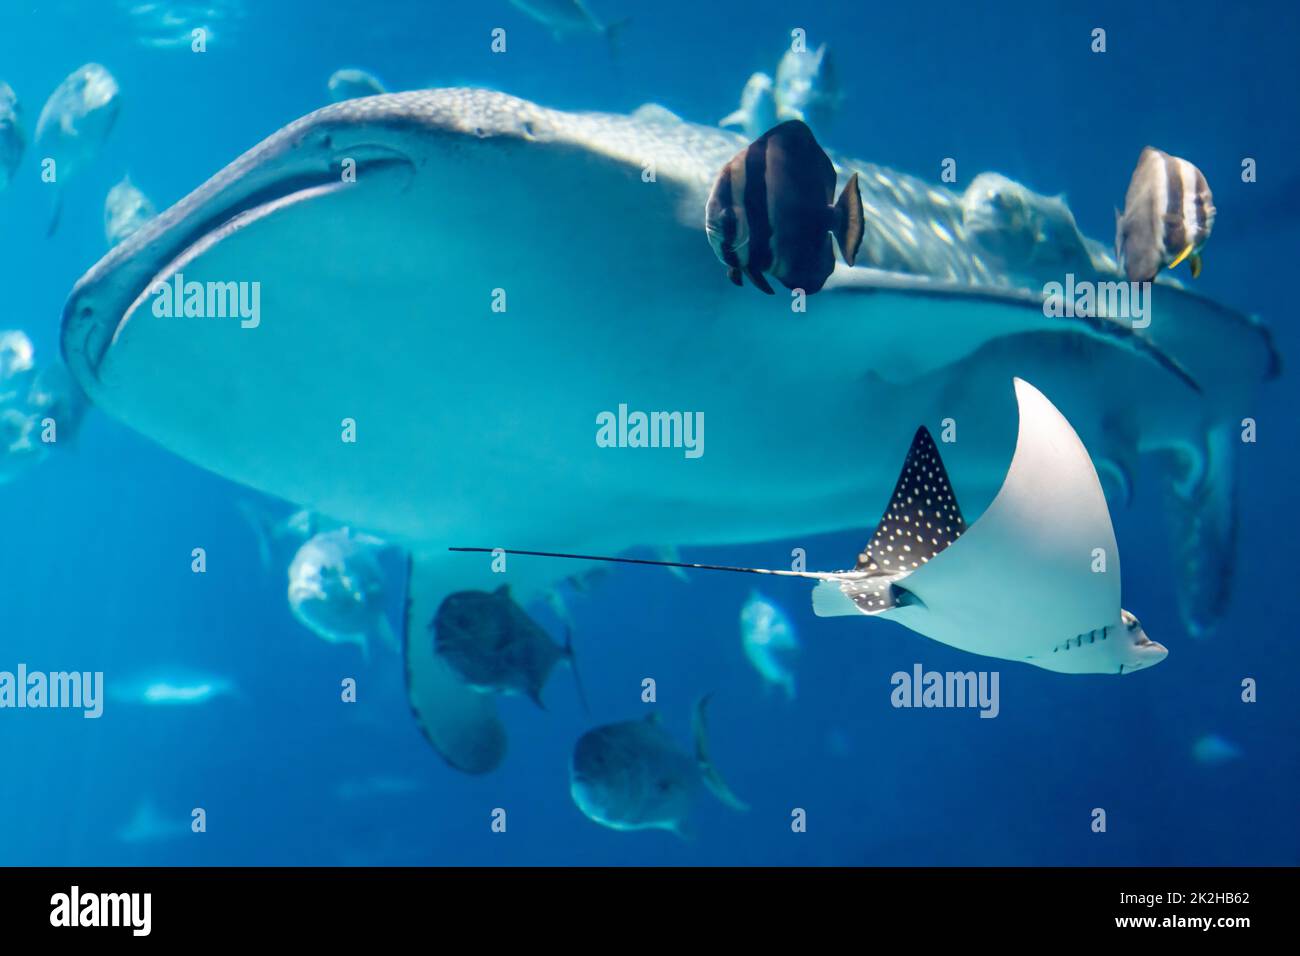 Uno squalo balena gigante e un raggio d'aquila macchiato, insieme a vari pesci oceanici, presso il Georgia Aquarium, il più grande acquario degli Stati Uniti. (USA) Foto Stock